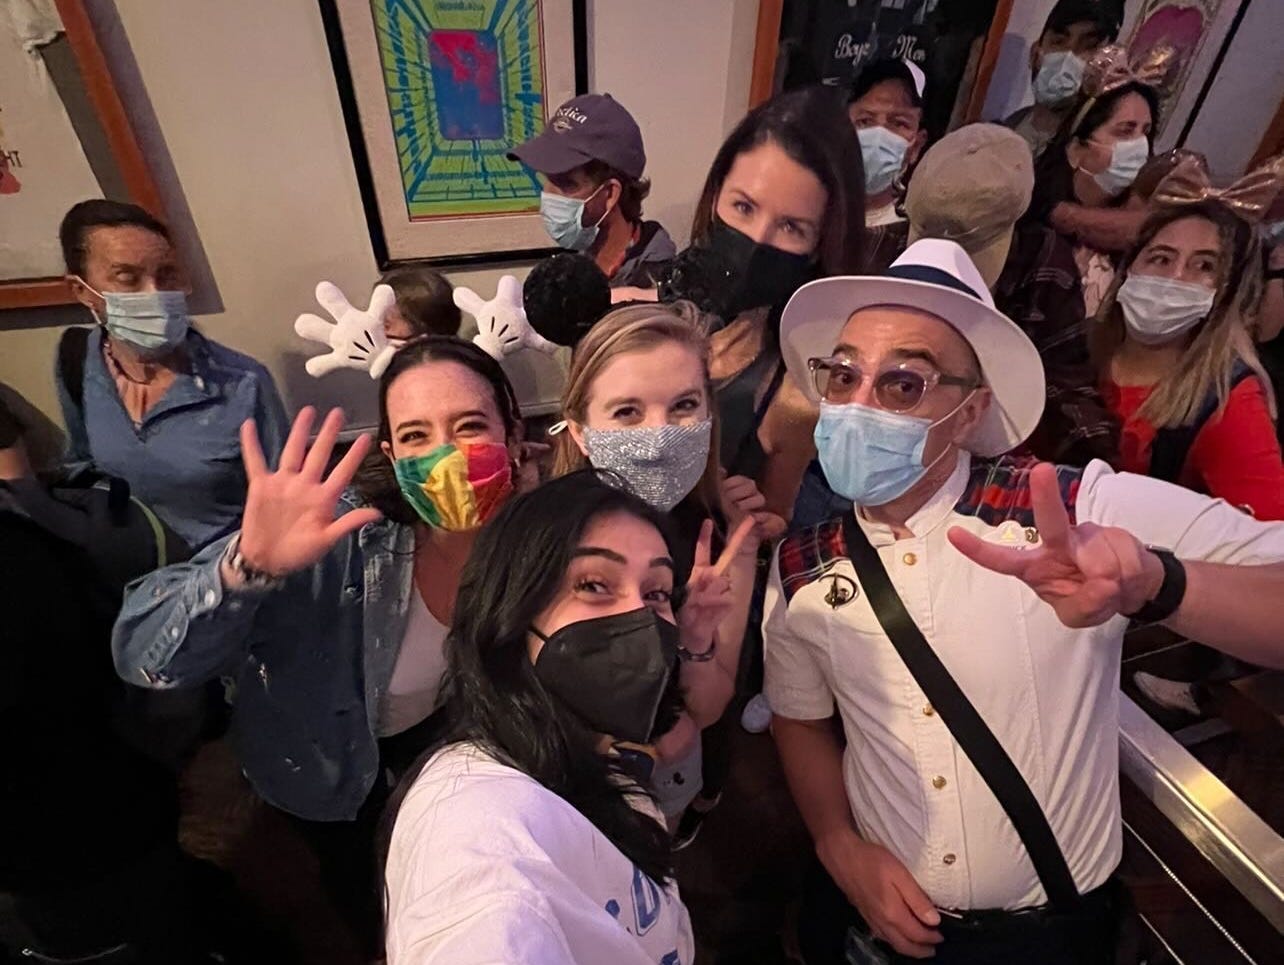 josie und ihre gruppe machen ein selfie mit ihrem vip-reiseleiter in disney world